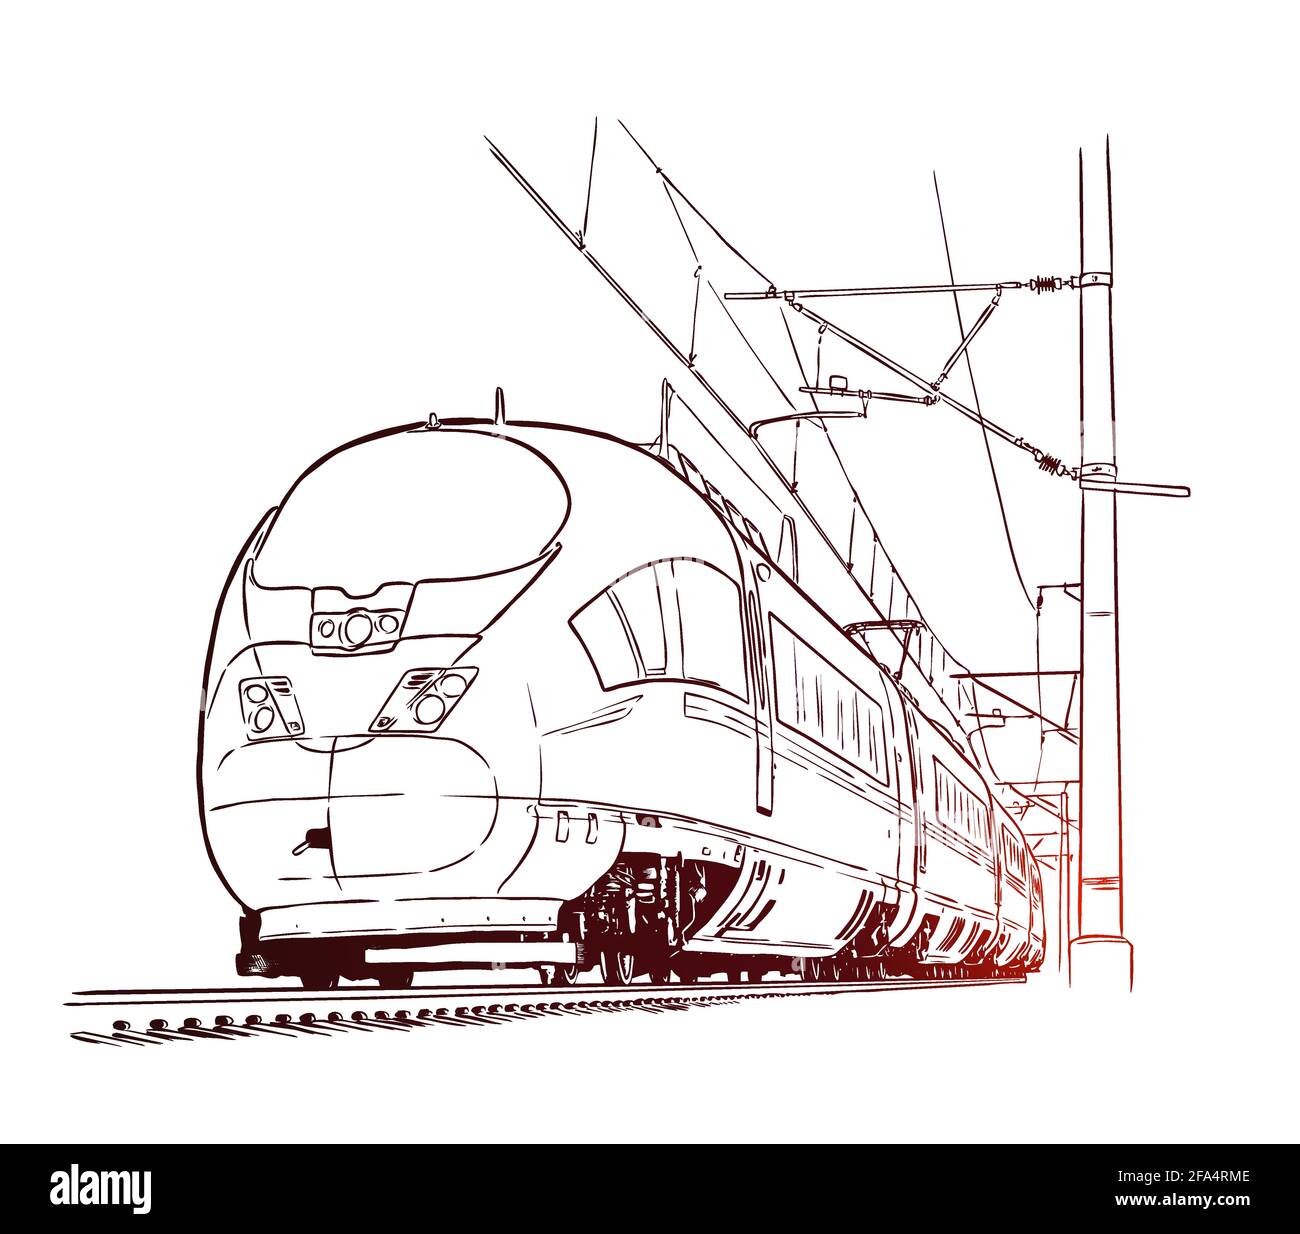 Train de voyageurs. Illustration vectorielle d'esquisse dessinée à la main Illustration de Vecteur